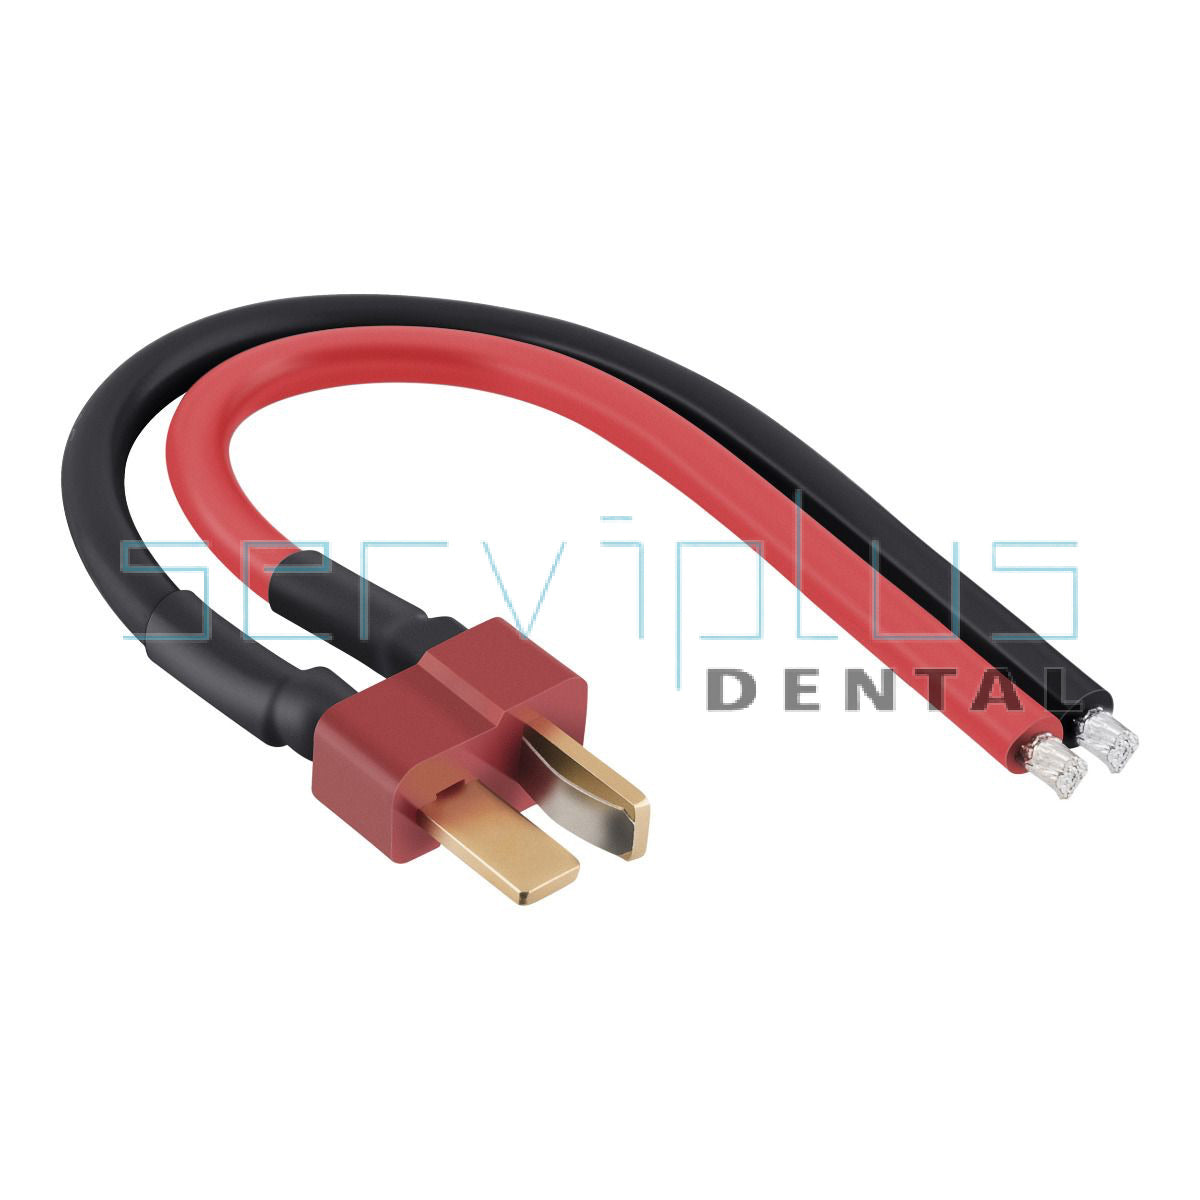 Conector decano macho c/ cable (15cm) - SDENTAL.MX Deposito Dental